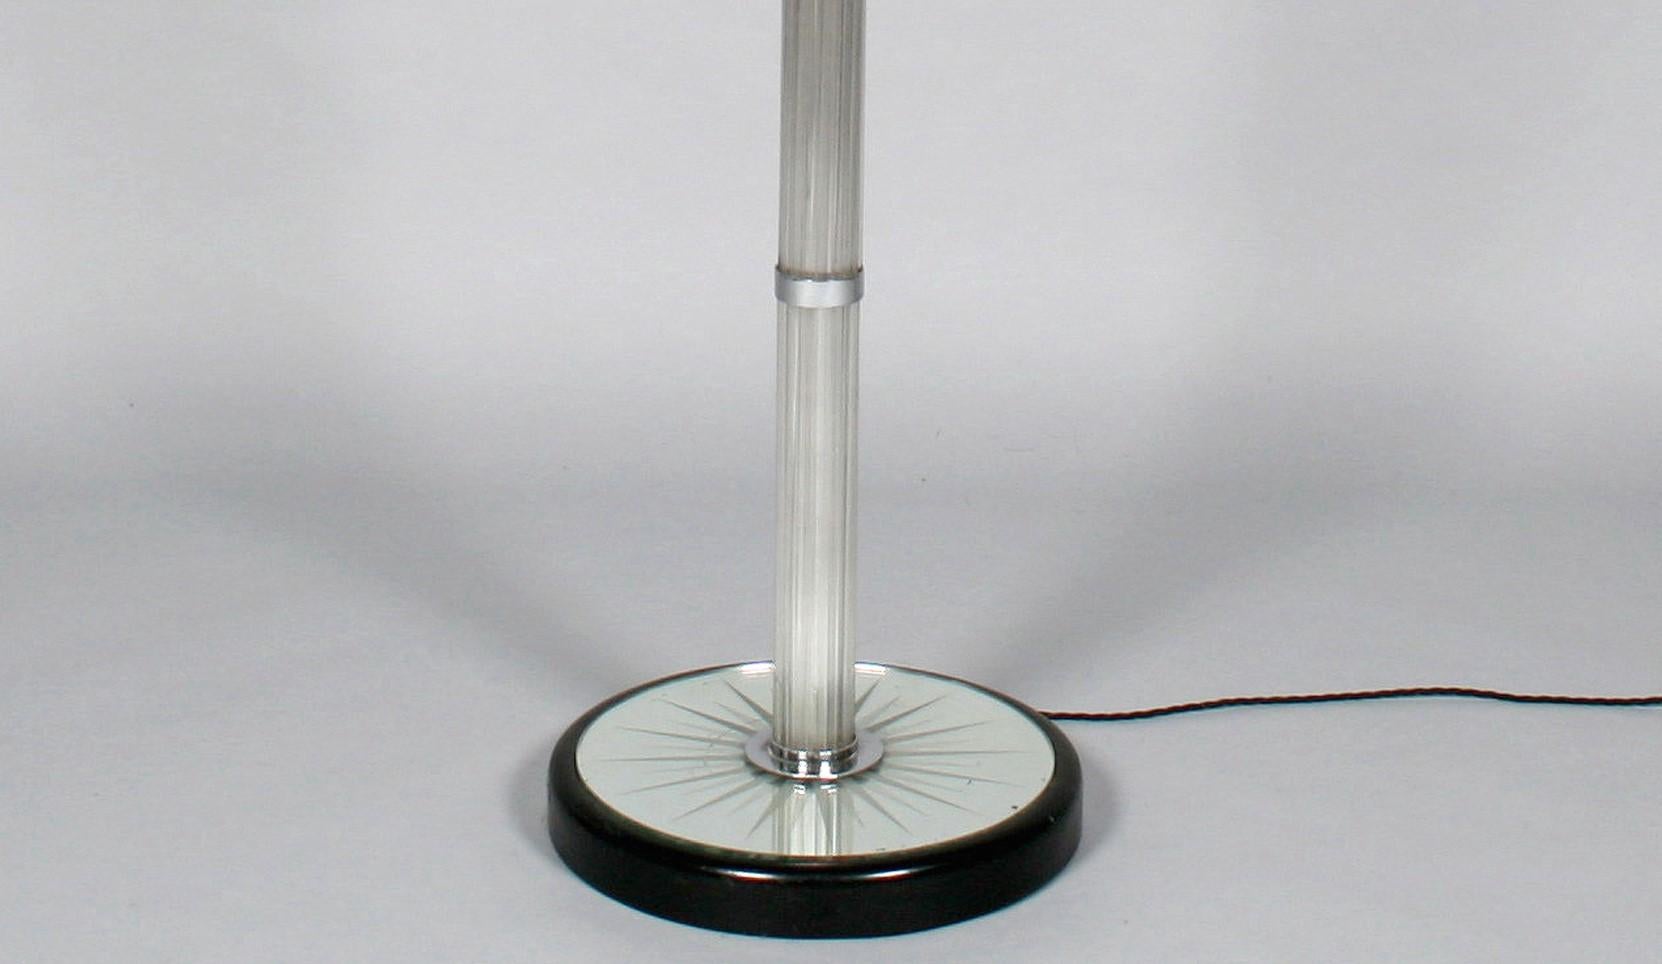 Lampe standard inhabituelle conçue par Brusotti avec une base en bois ébonisé et un miroir gravé en forme d'étoile. Le pied est constitué de tiges de verre maintenues par des colliers chromés. Il y a un projecteur chromé et trois douilles